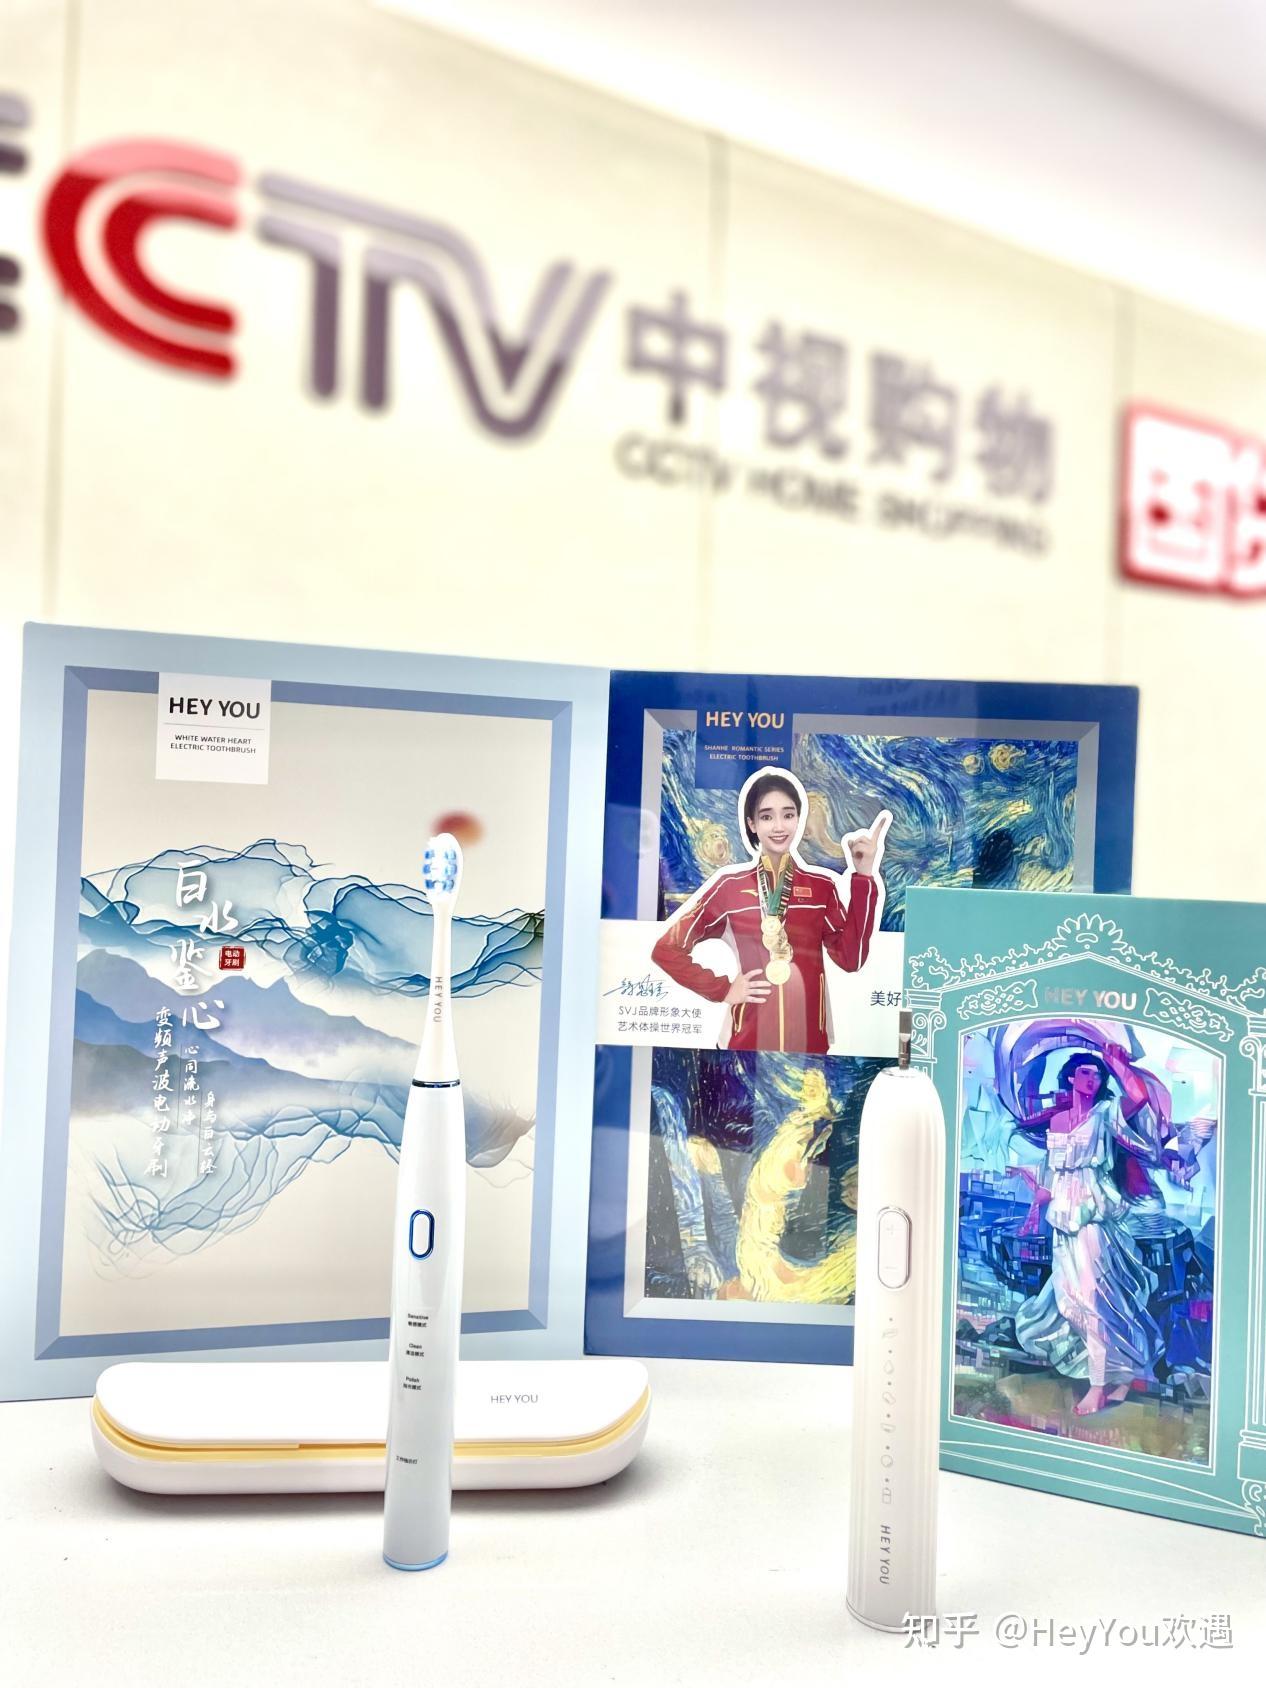 CCTV中视购物国货优品栏目专场直播恒而昇产品